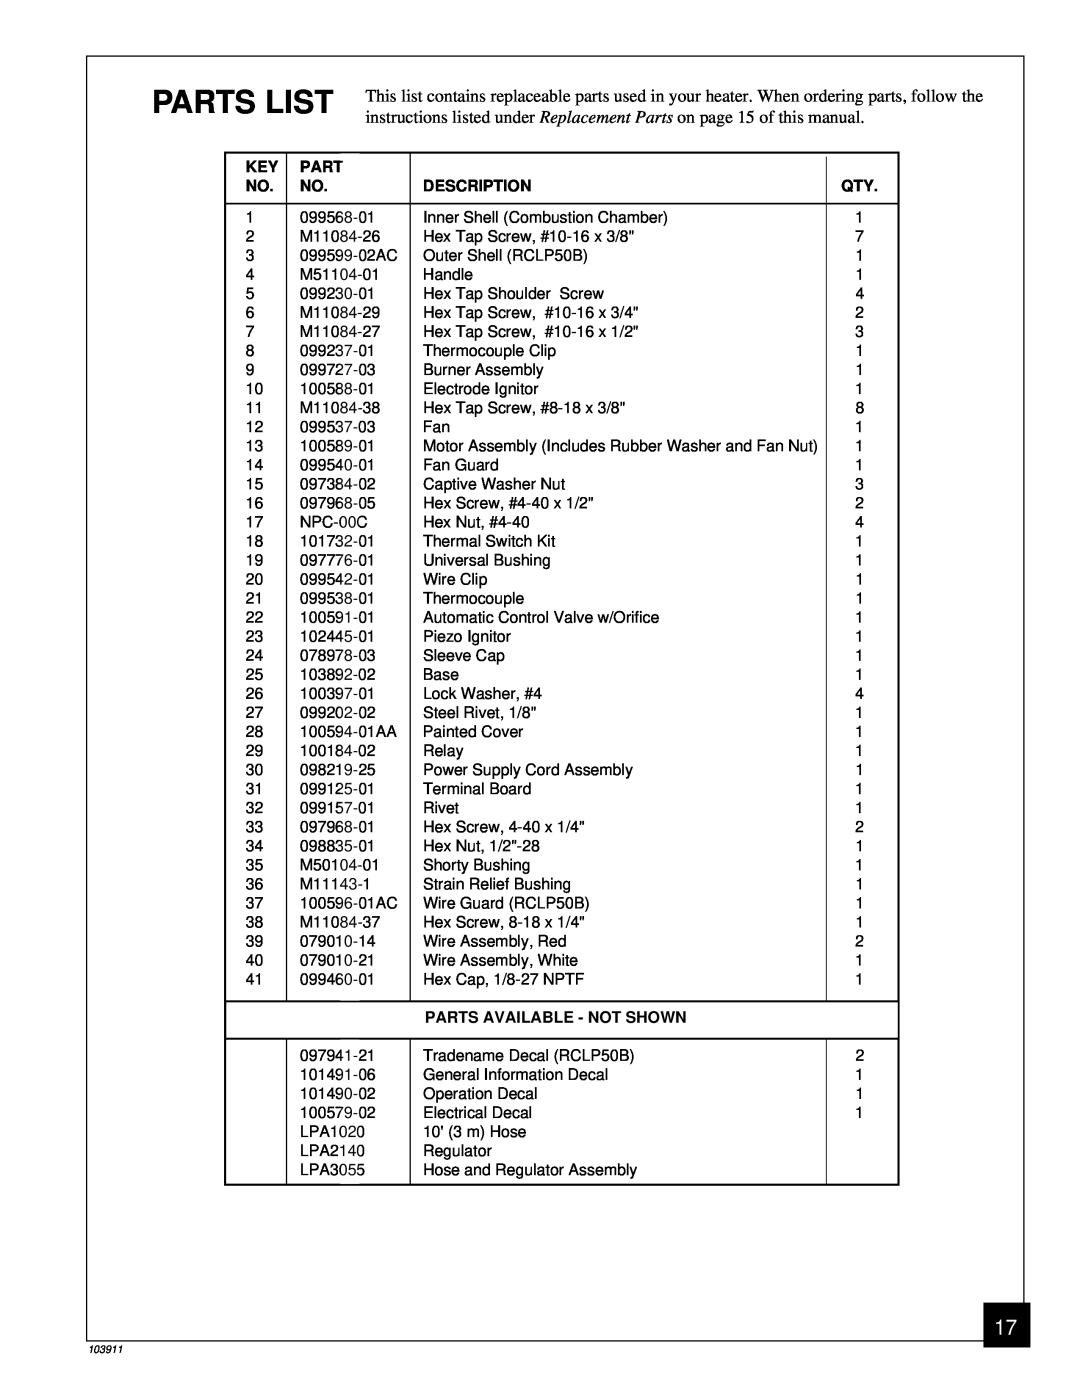 Desa RCLP50B owner manual Parts List, Description, Parts Available - Not Shown 